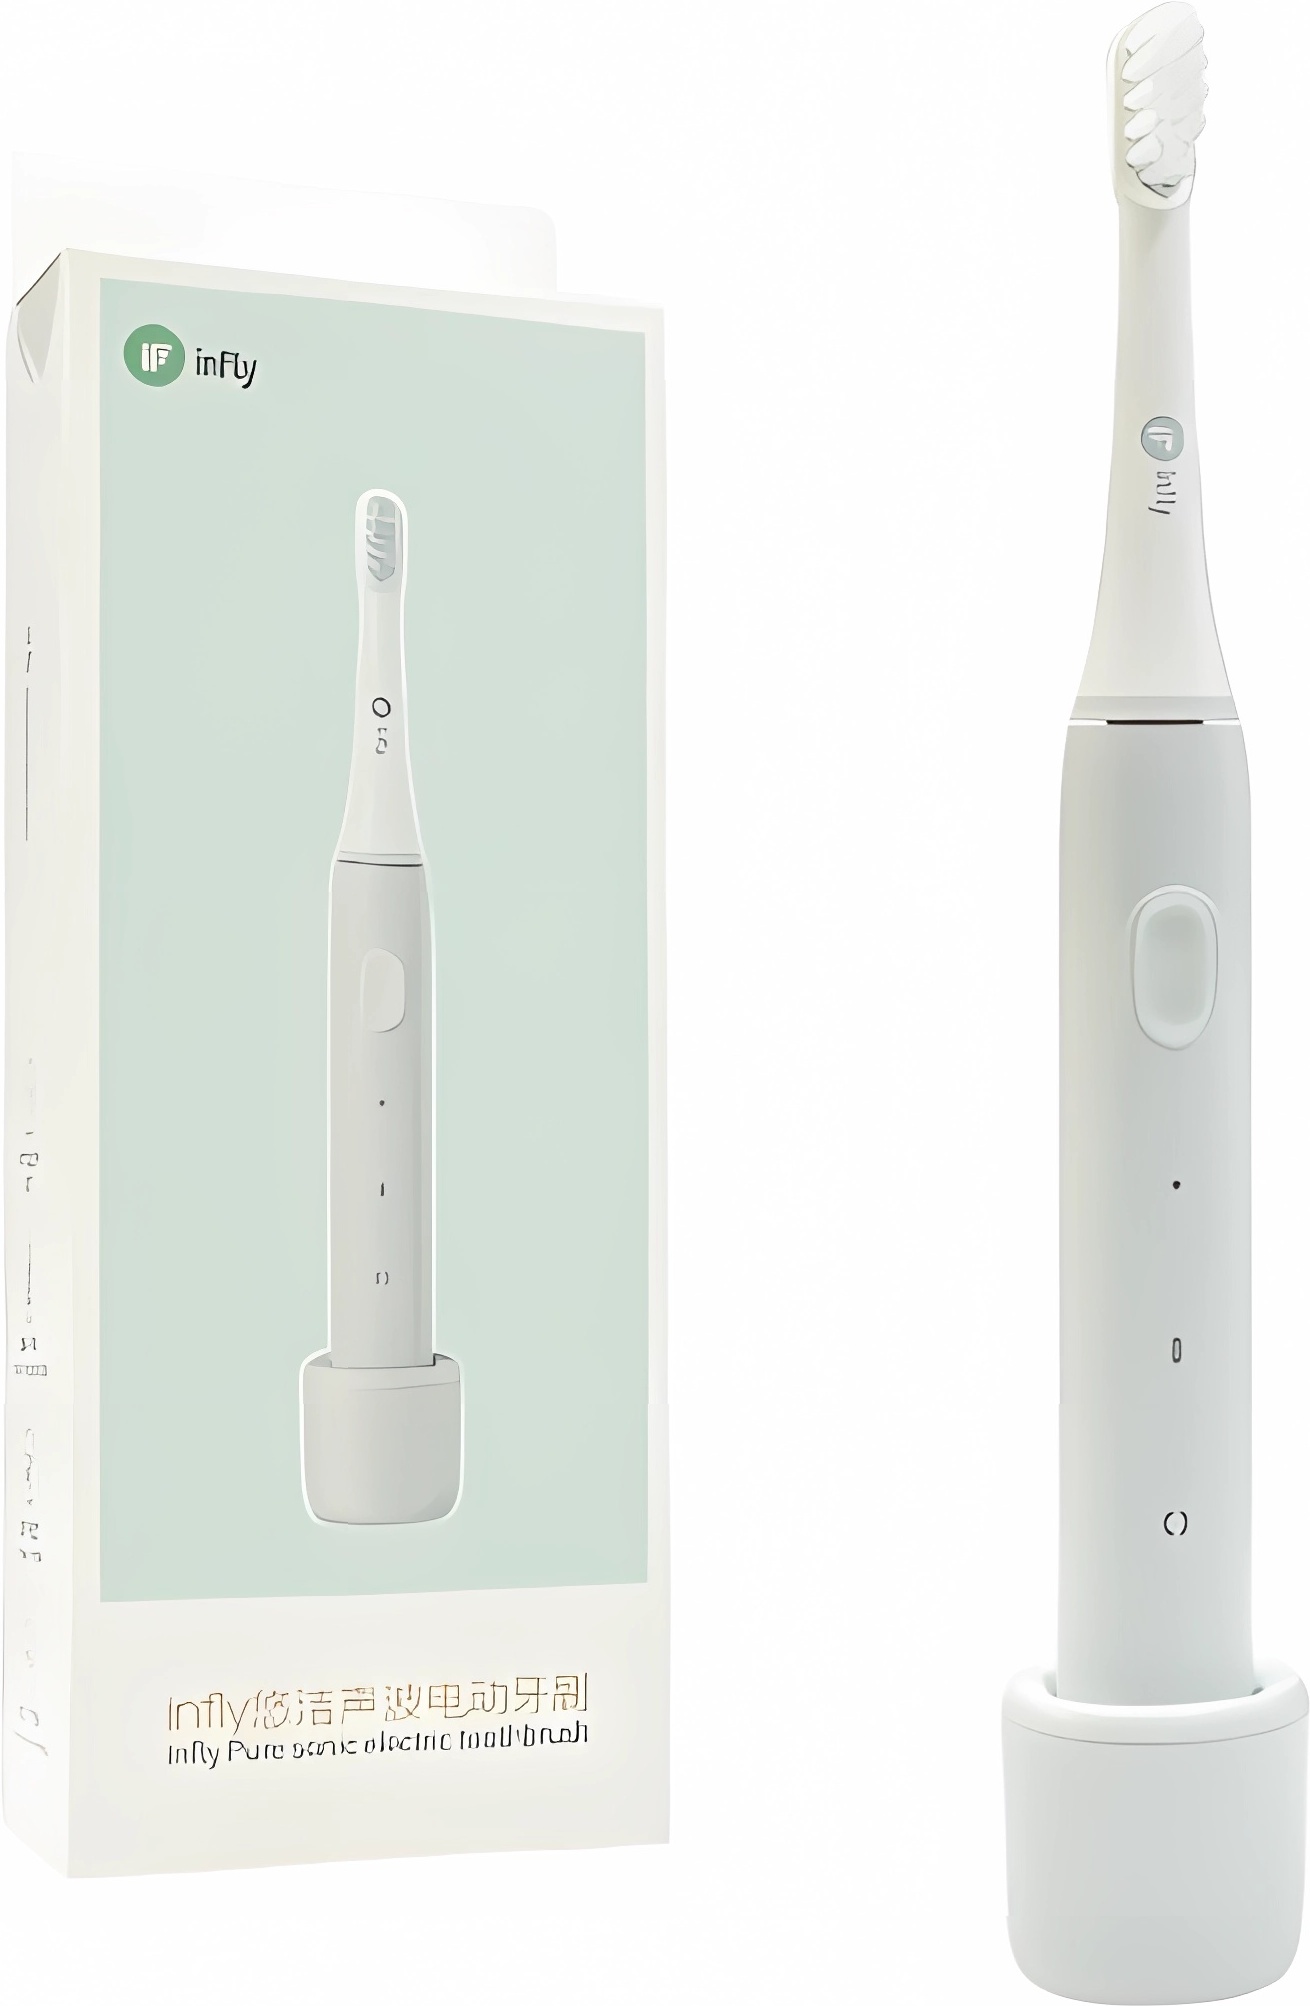 Электрическая зубная щетка Infly Electric Toothbrush P60 серый фен щетка marge hs 101gy 1000 вт серый